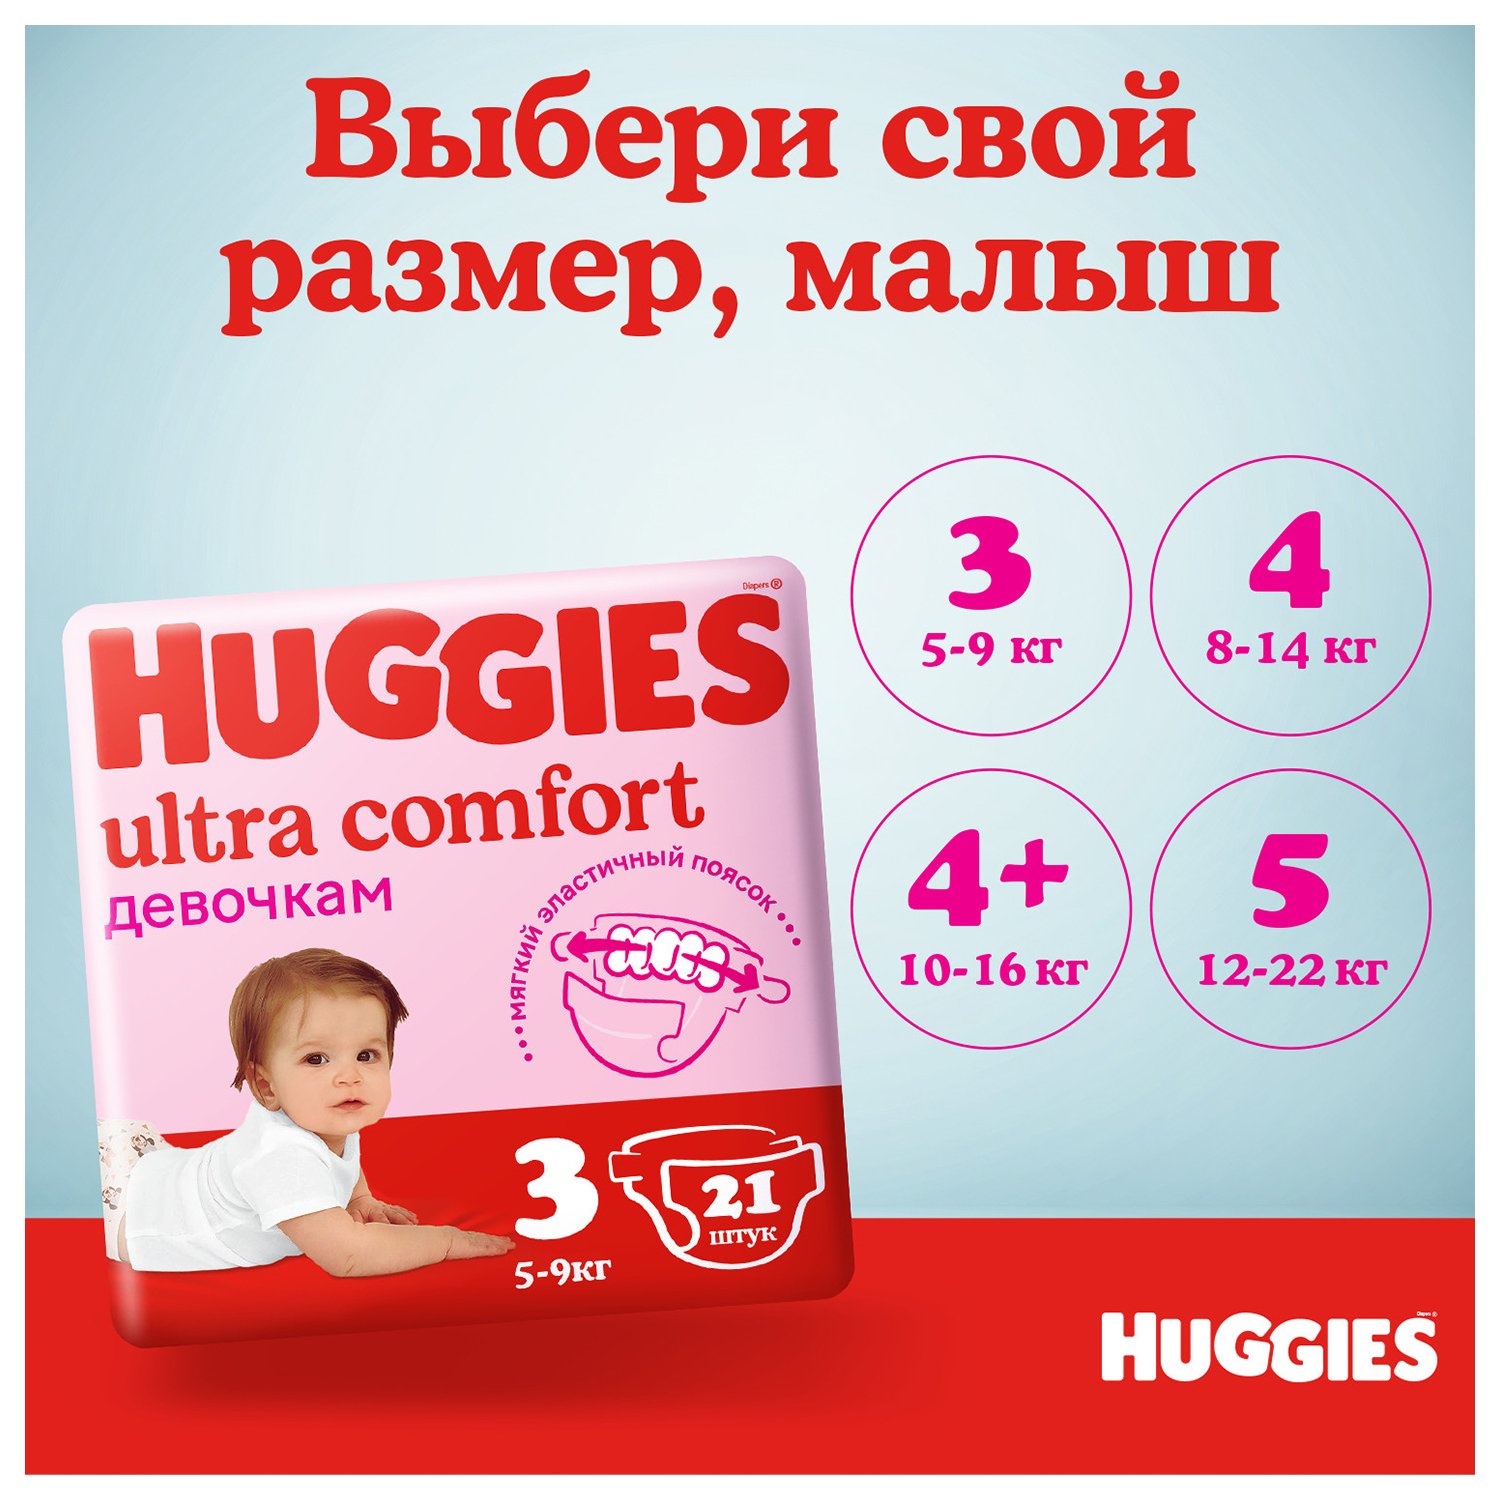 Подгузники Huggies Ultra Comfort для девочек 5 12-22кг 84шт